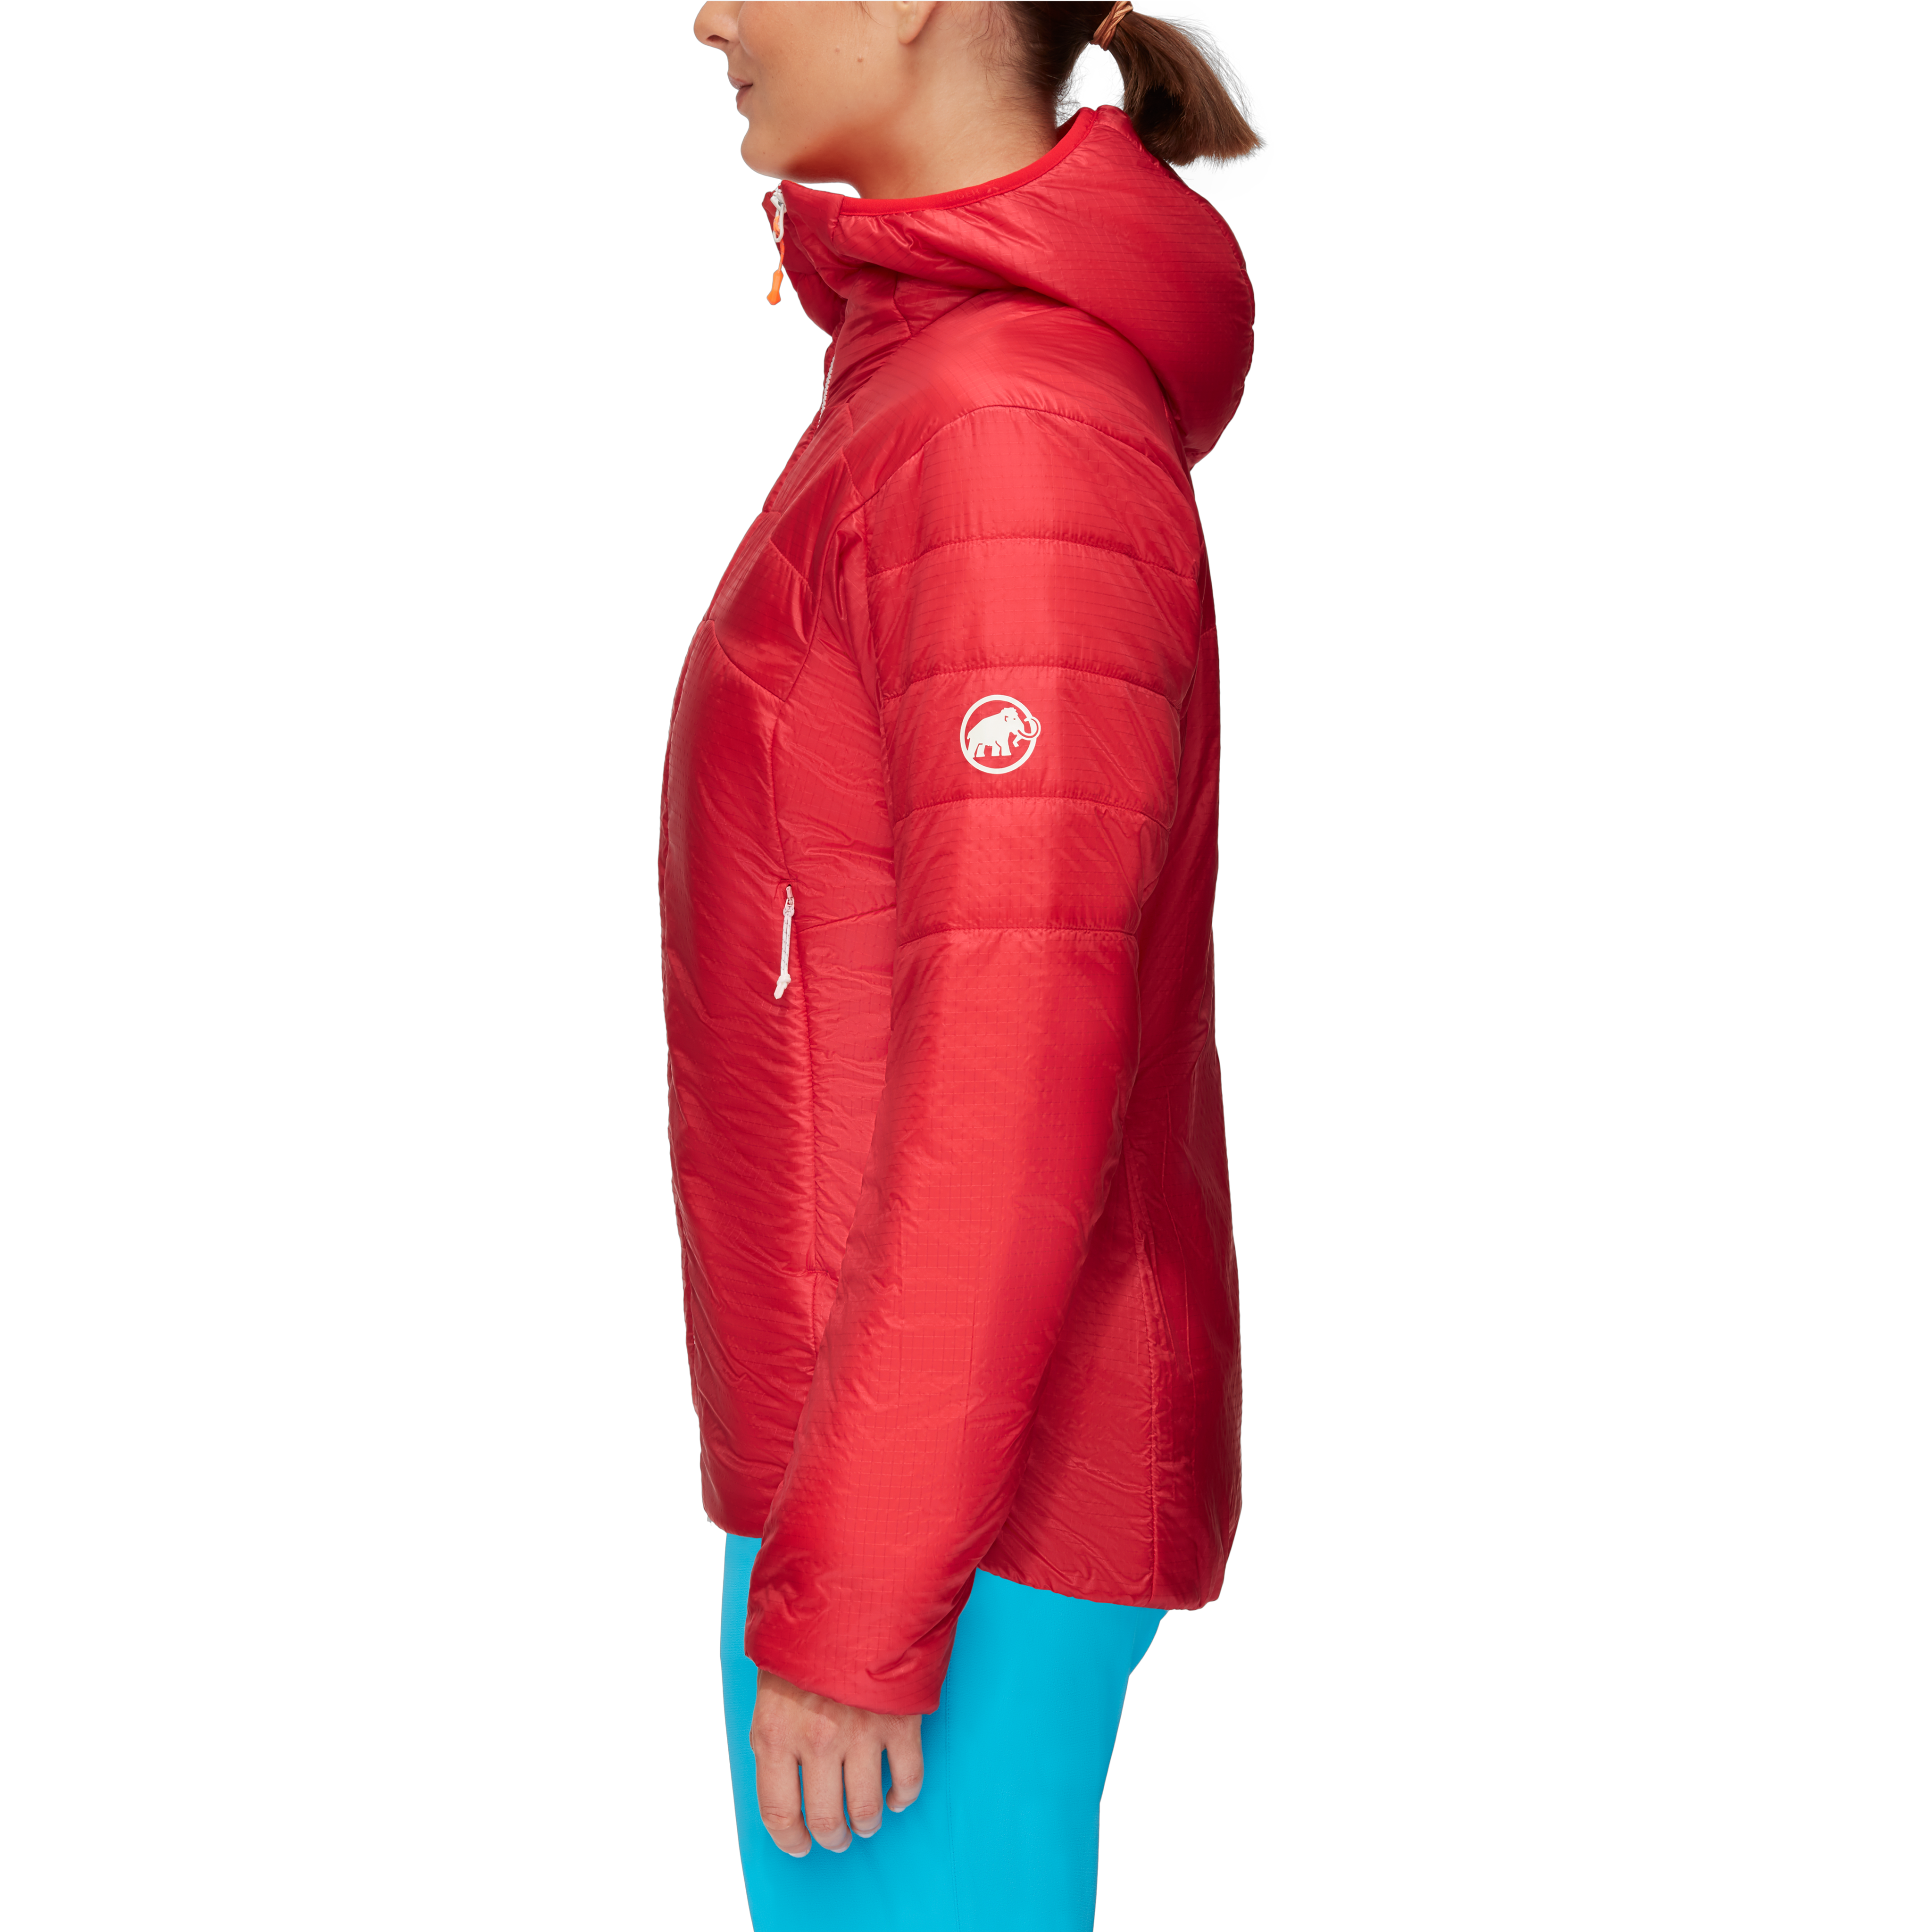 Eigerjoch Light IN Hooded Jacket Women product image